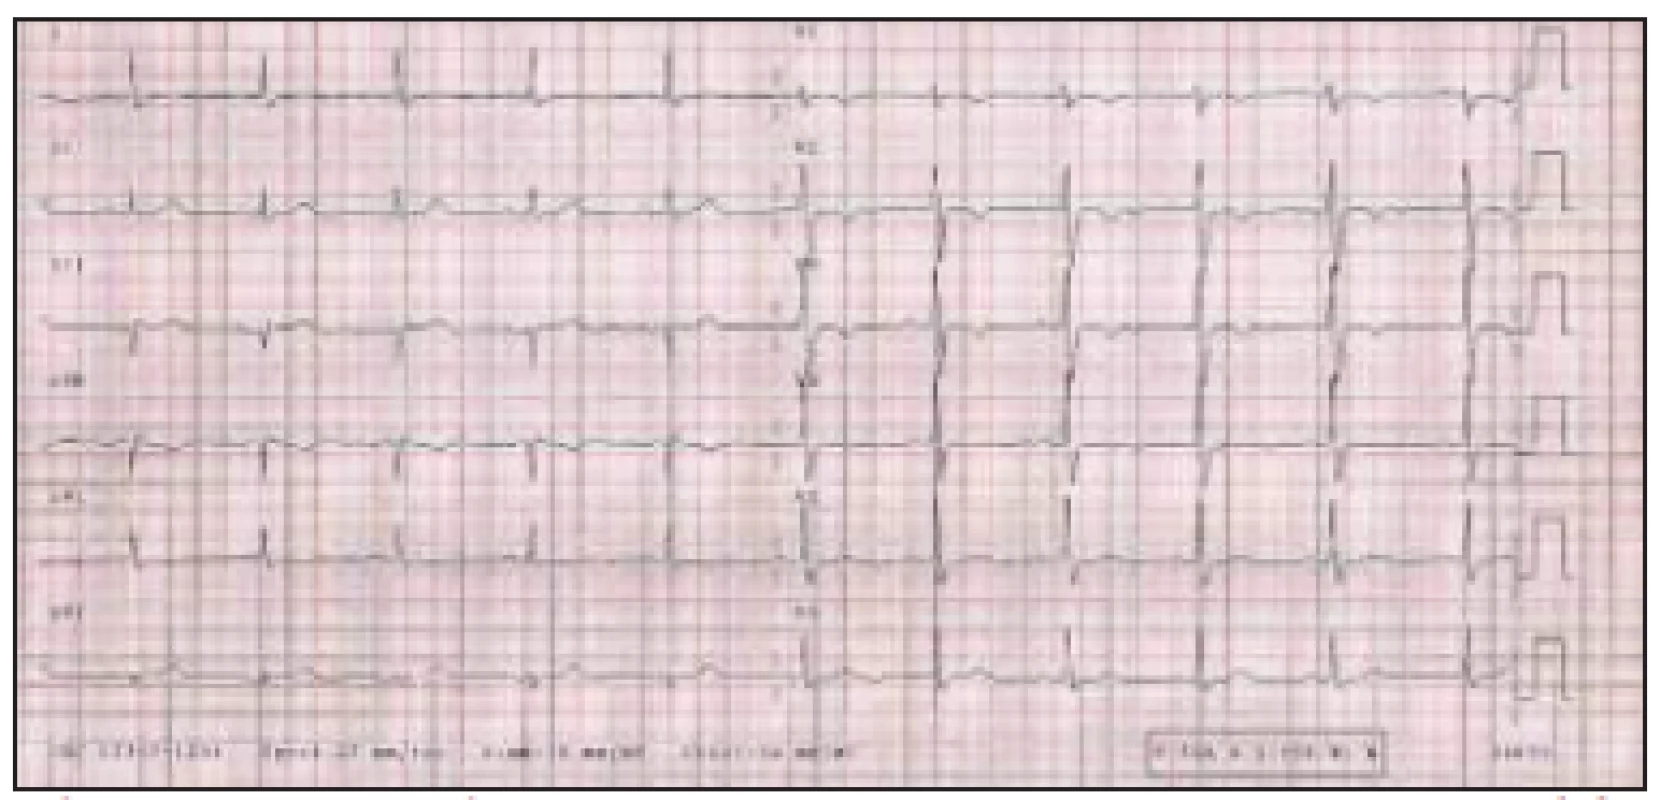 Elektrokardiografický záznam pacientky z 28. 2. 2003.